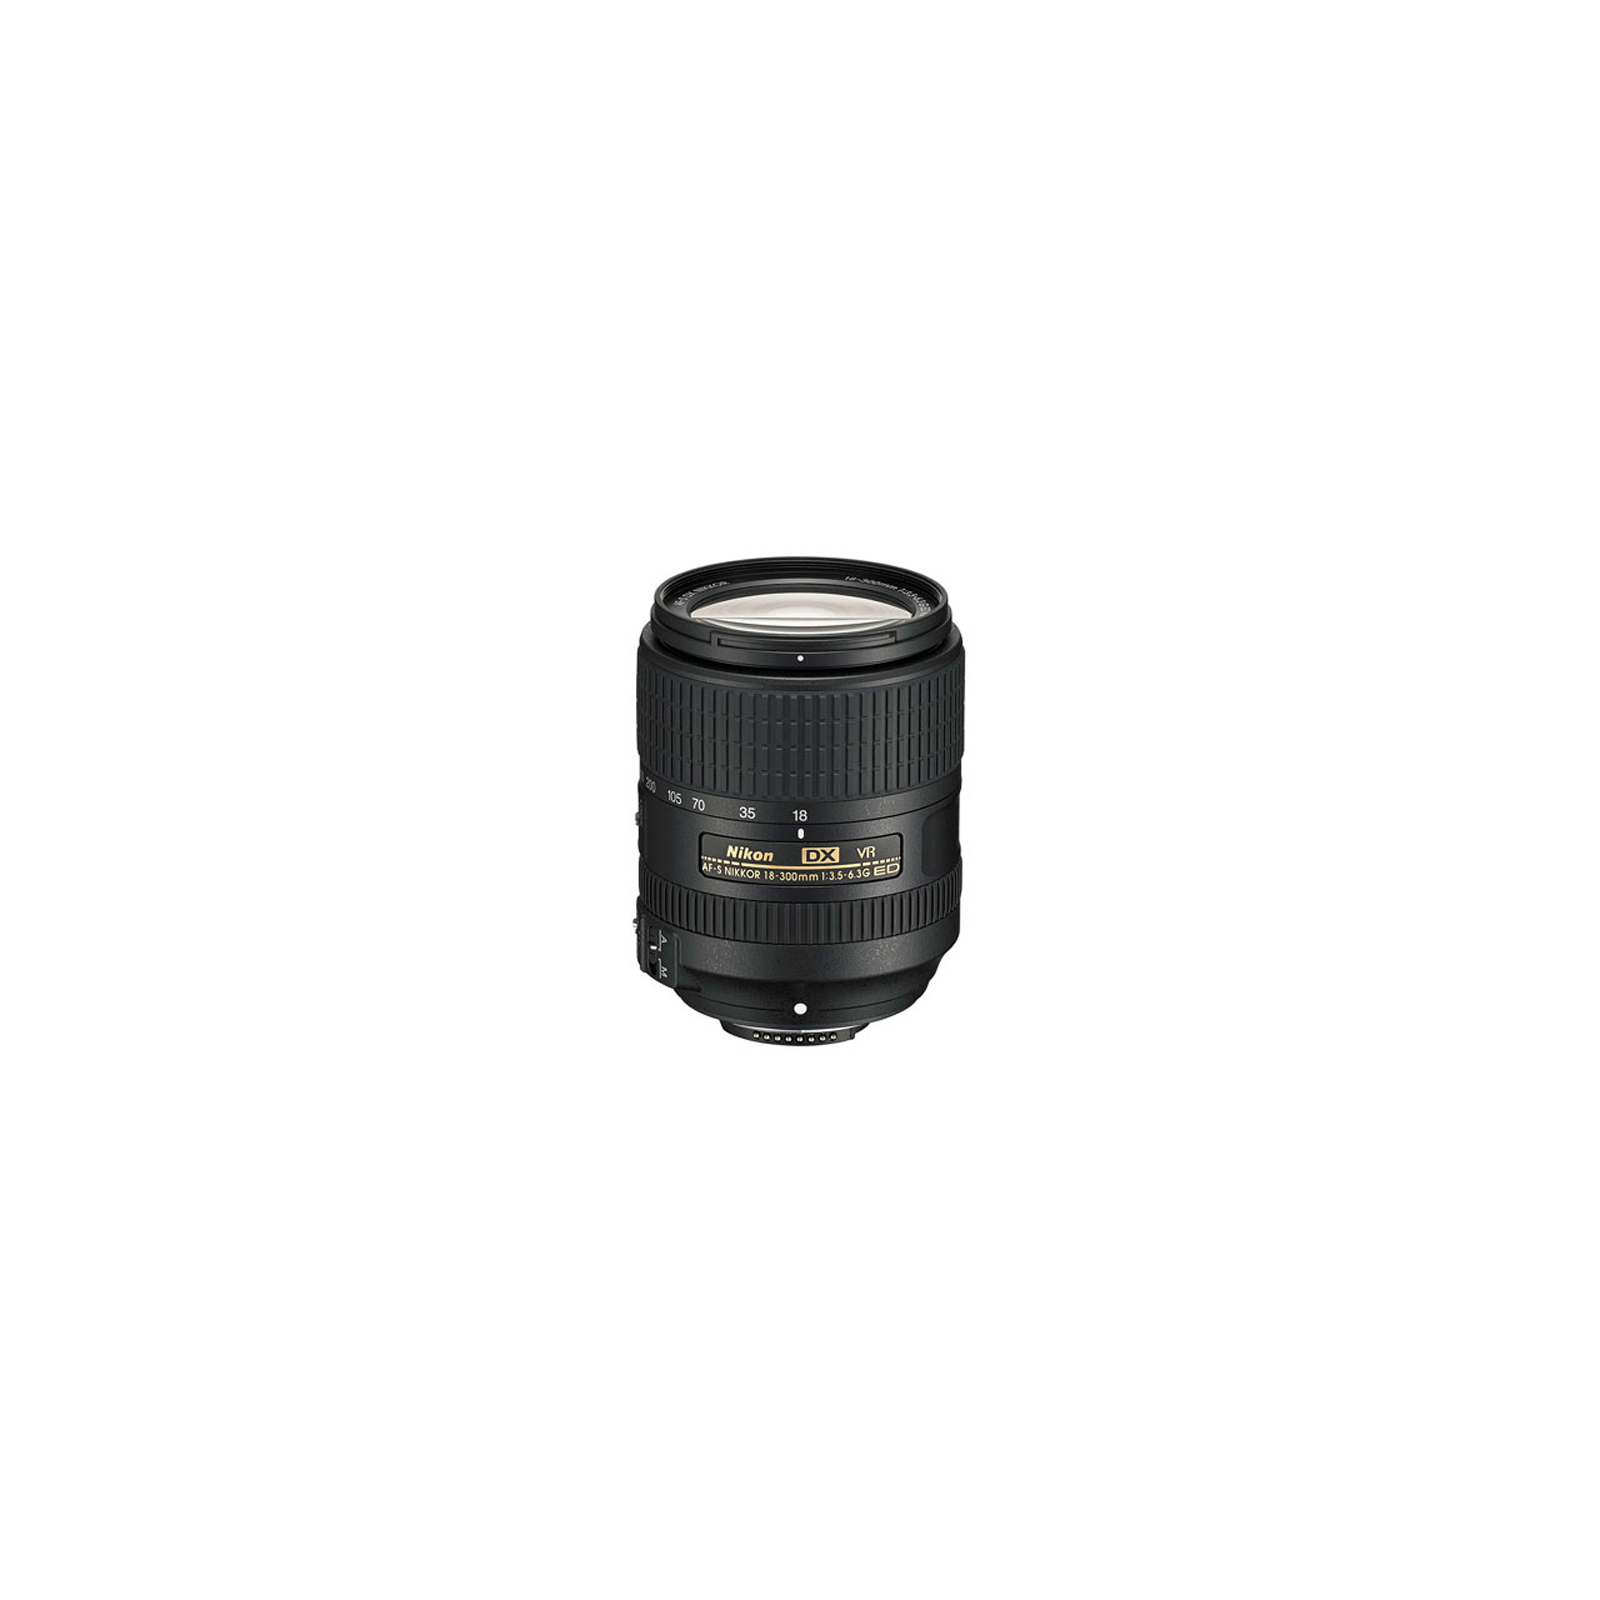 Объектив Nikon 18-300mm f/3.5-6.3G ED AF-S DX VR (JAA821DA)